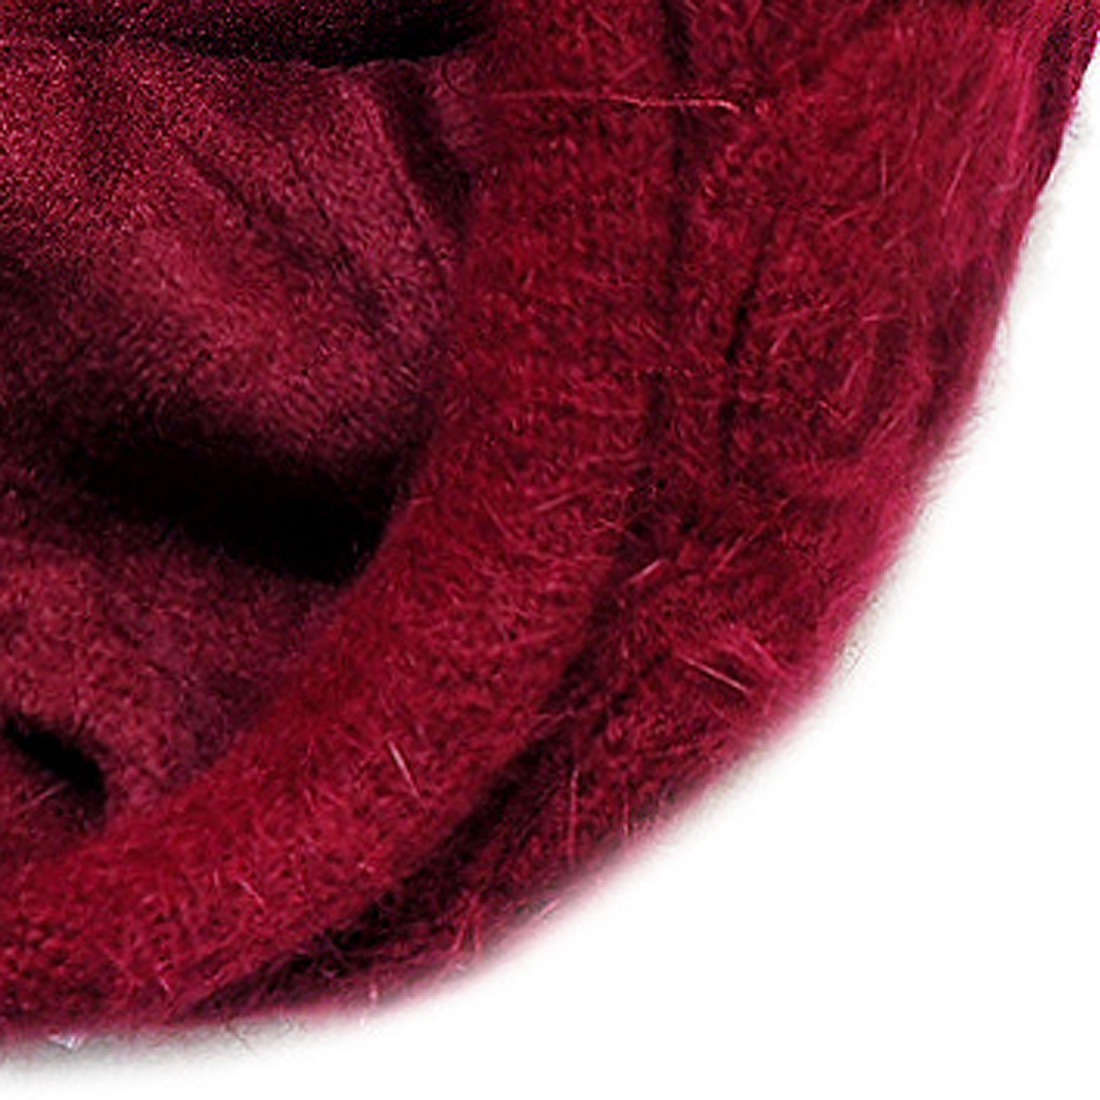 Mũ len thời trang cao cấp màu đỏ đô EH48-1